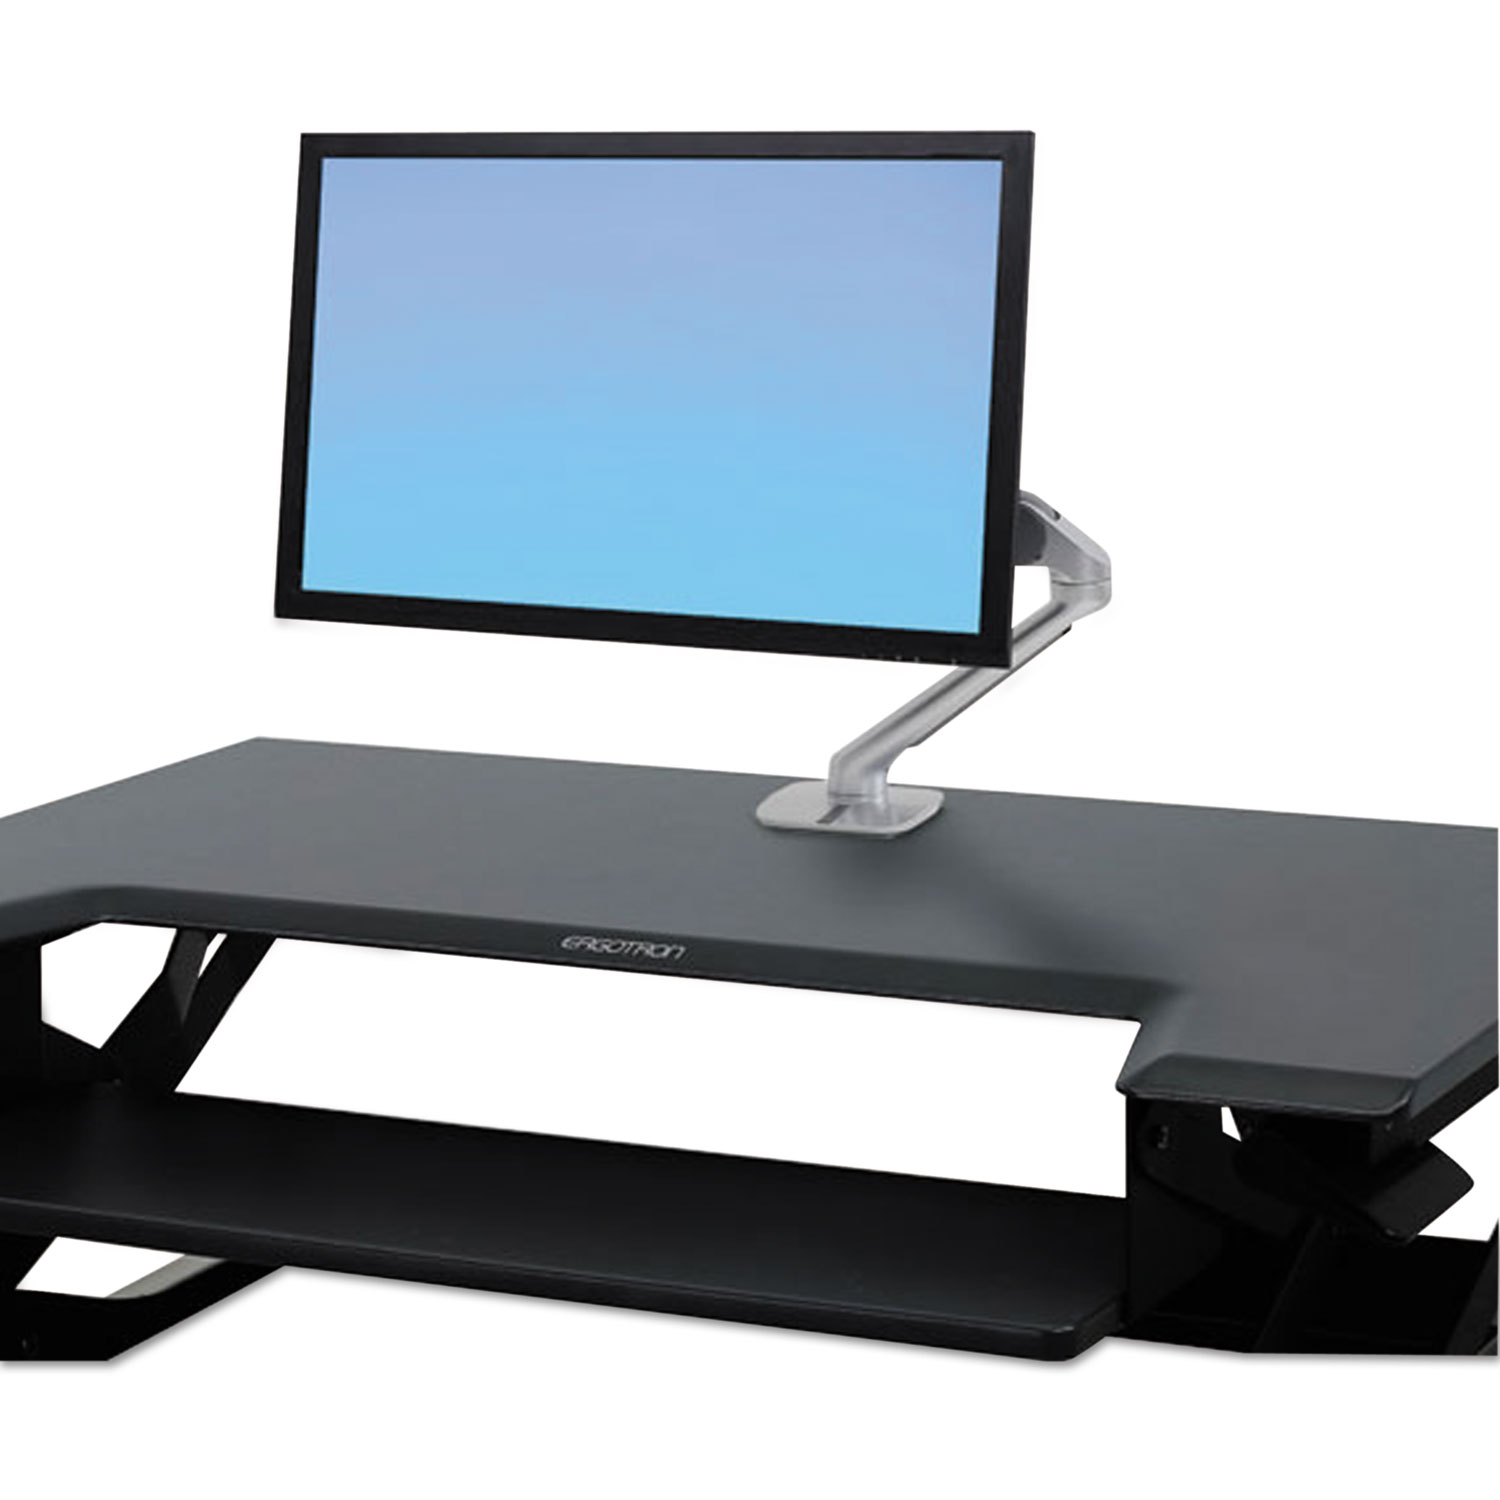 Ergotron WorkFit-TL Adjustable Sit to Stand Standing Desk Workstation Converter - image 5 of 6